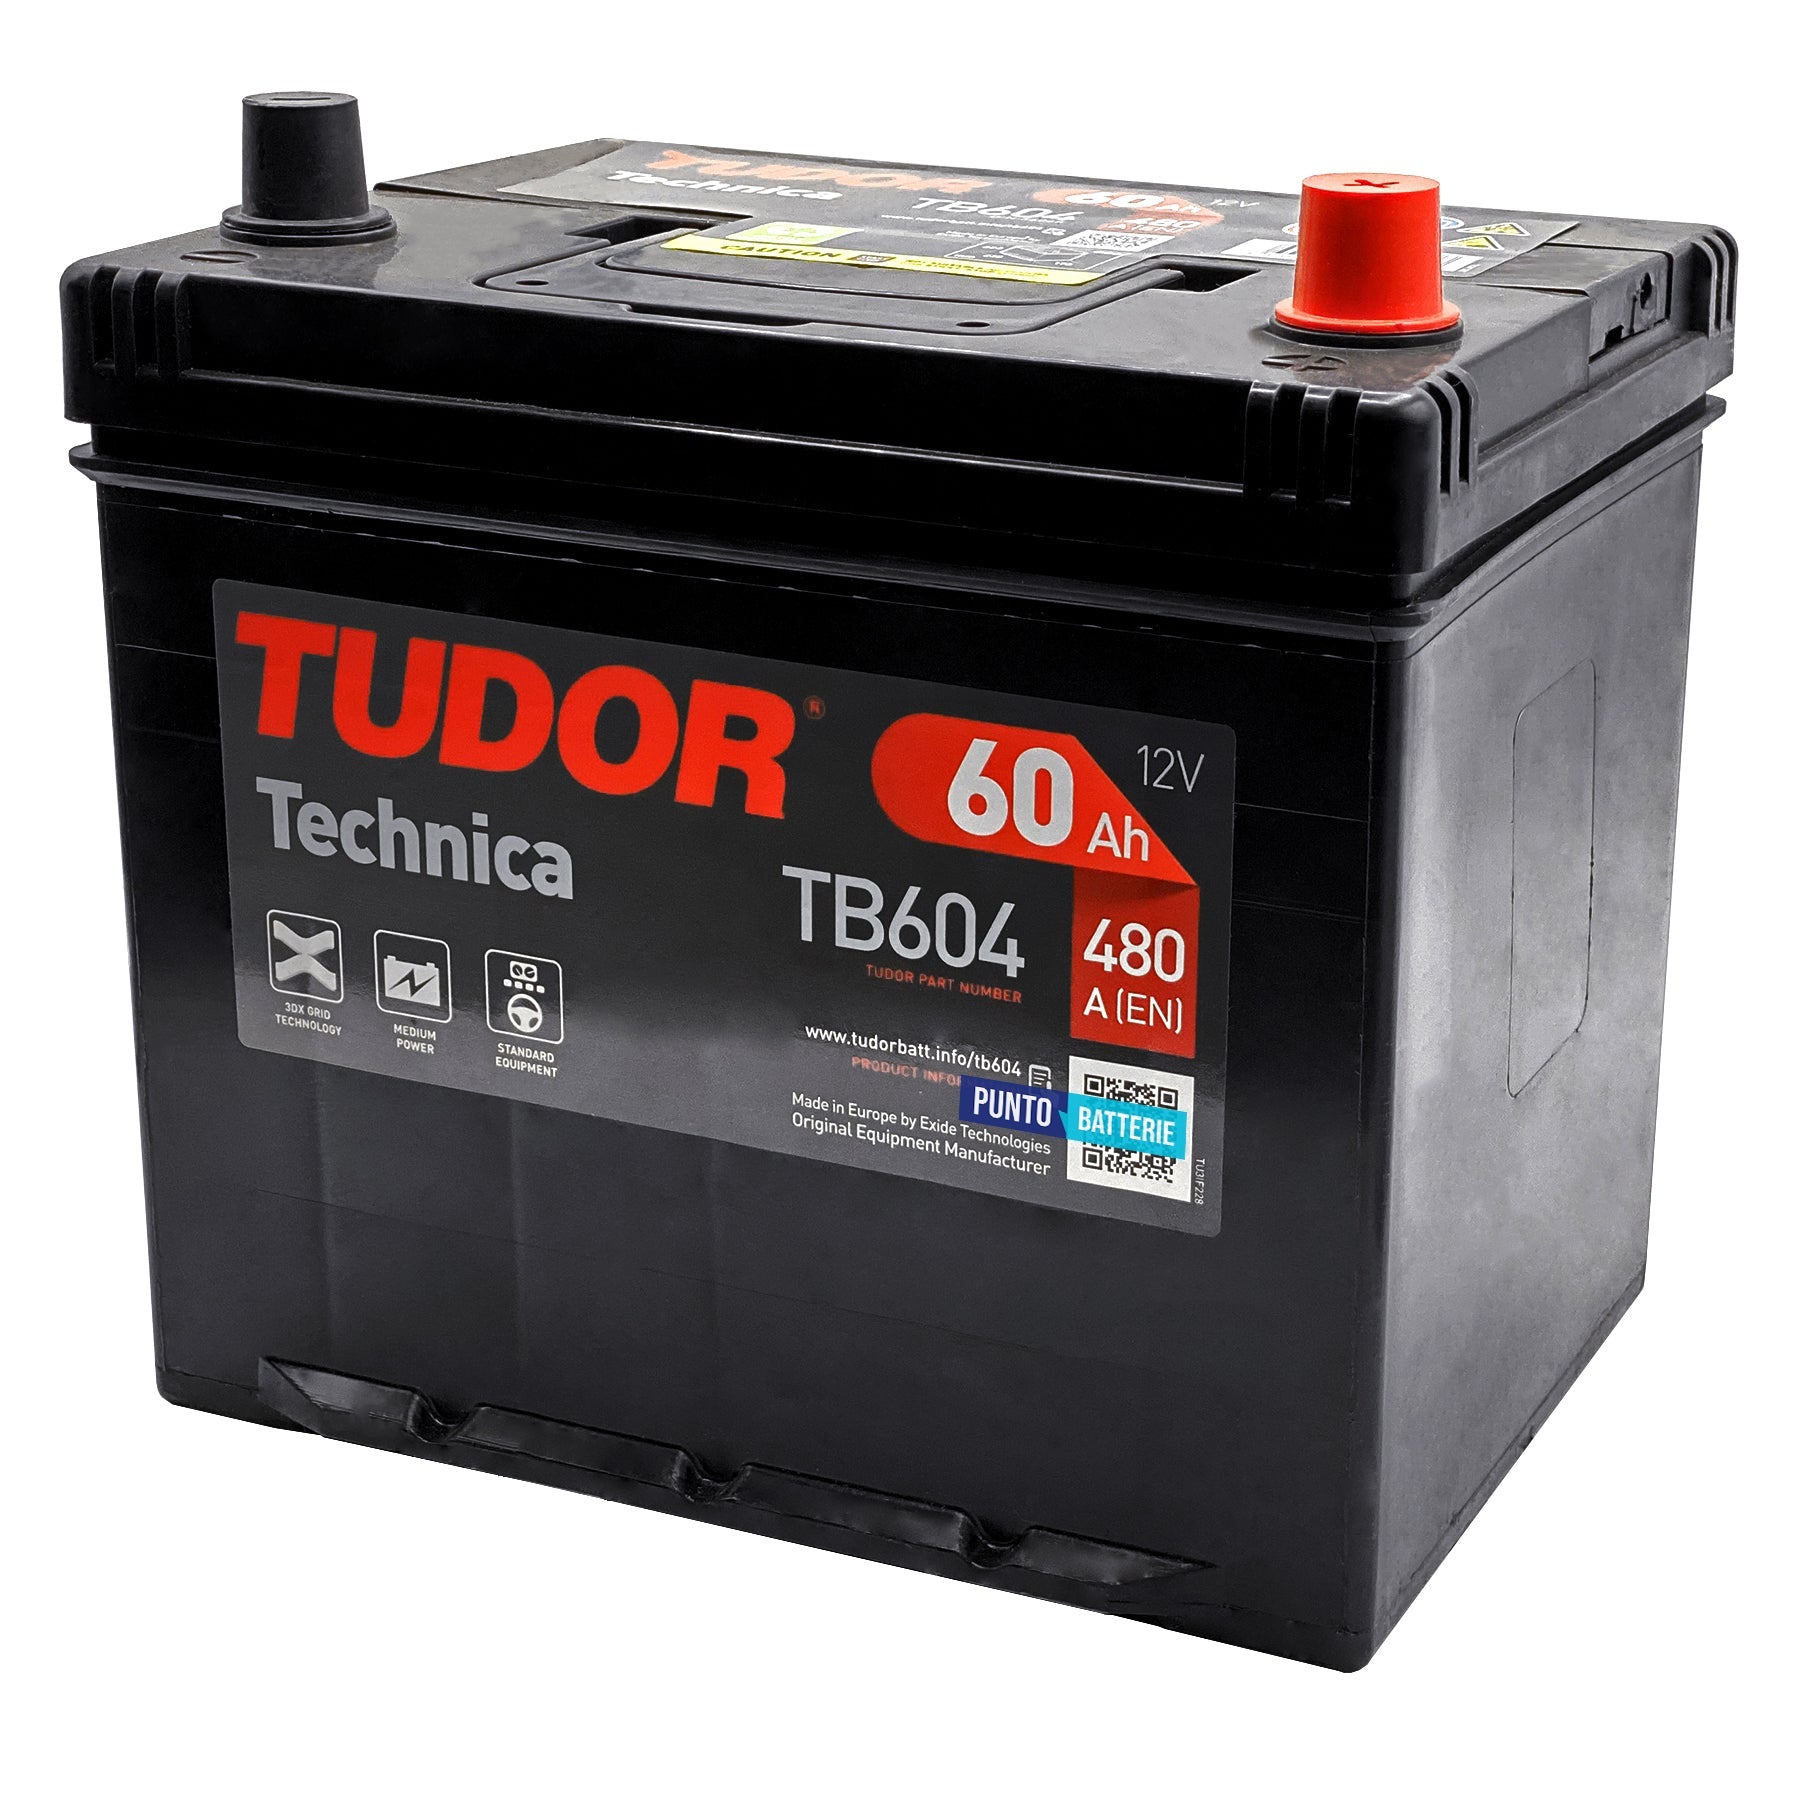 Batteria originale Tudor Technica TB604, dimensioni 230 x 173 x 222, polo positivo a destra, 12 volt, 60 amperora, 480 ampere. Batteria per auto e veicoli leggeri.